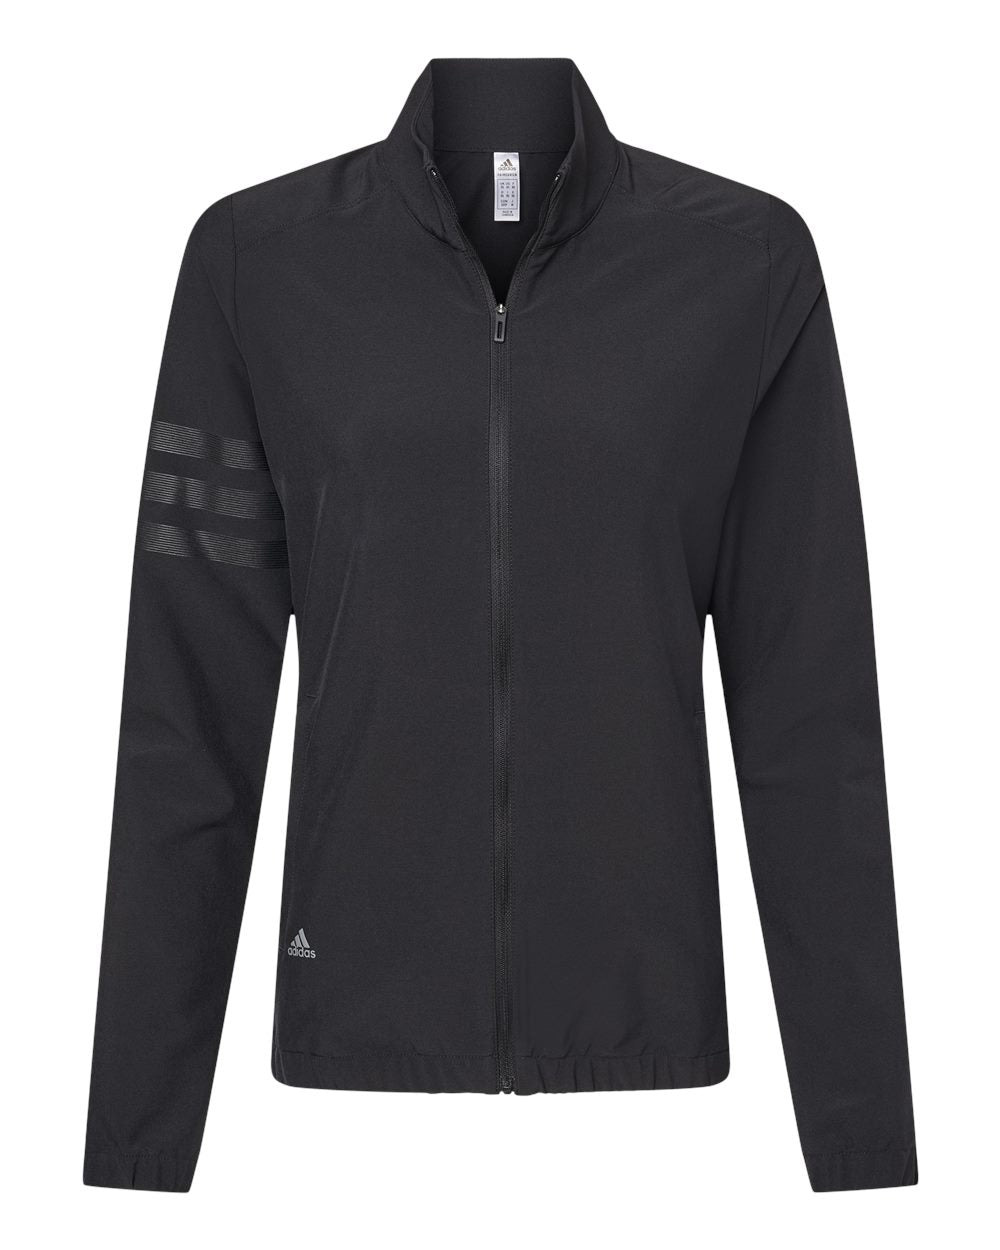 Adidas - Women's 3-Stripes Jacket - A268